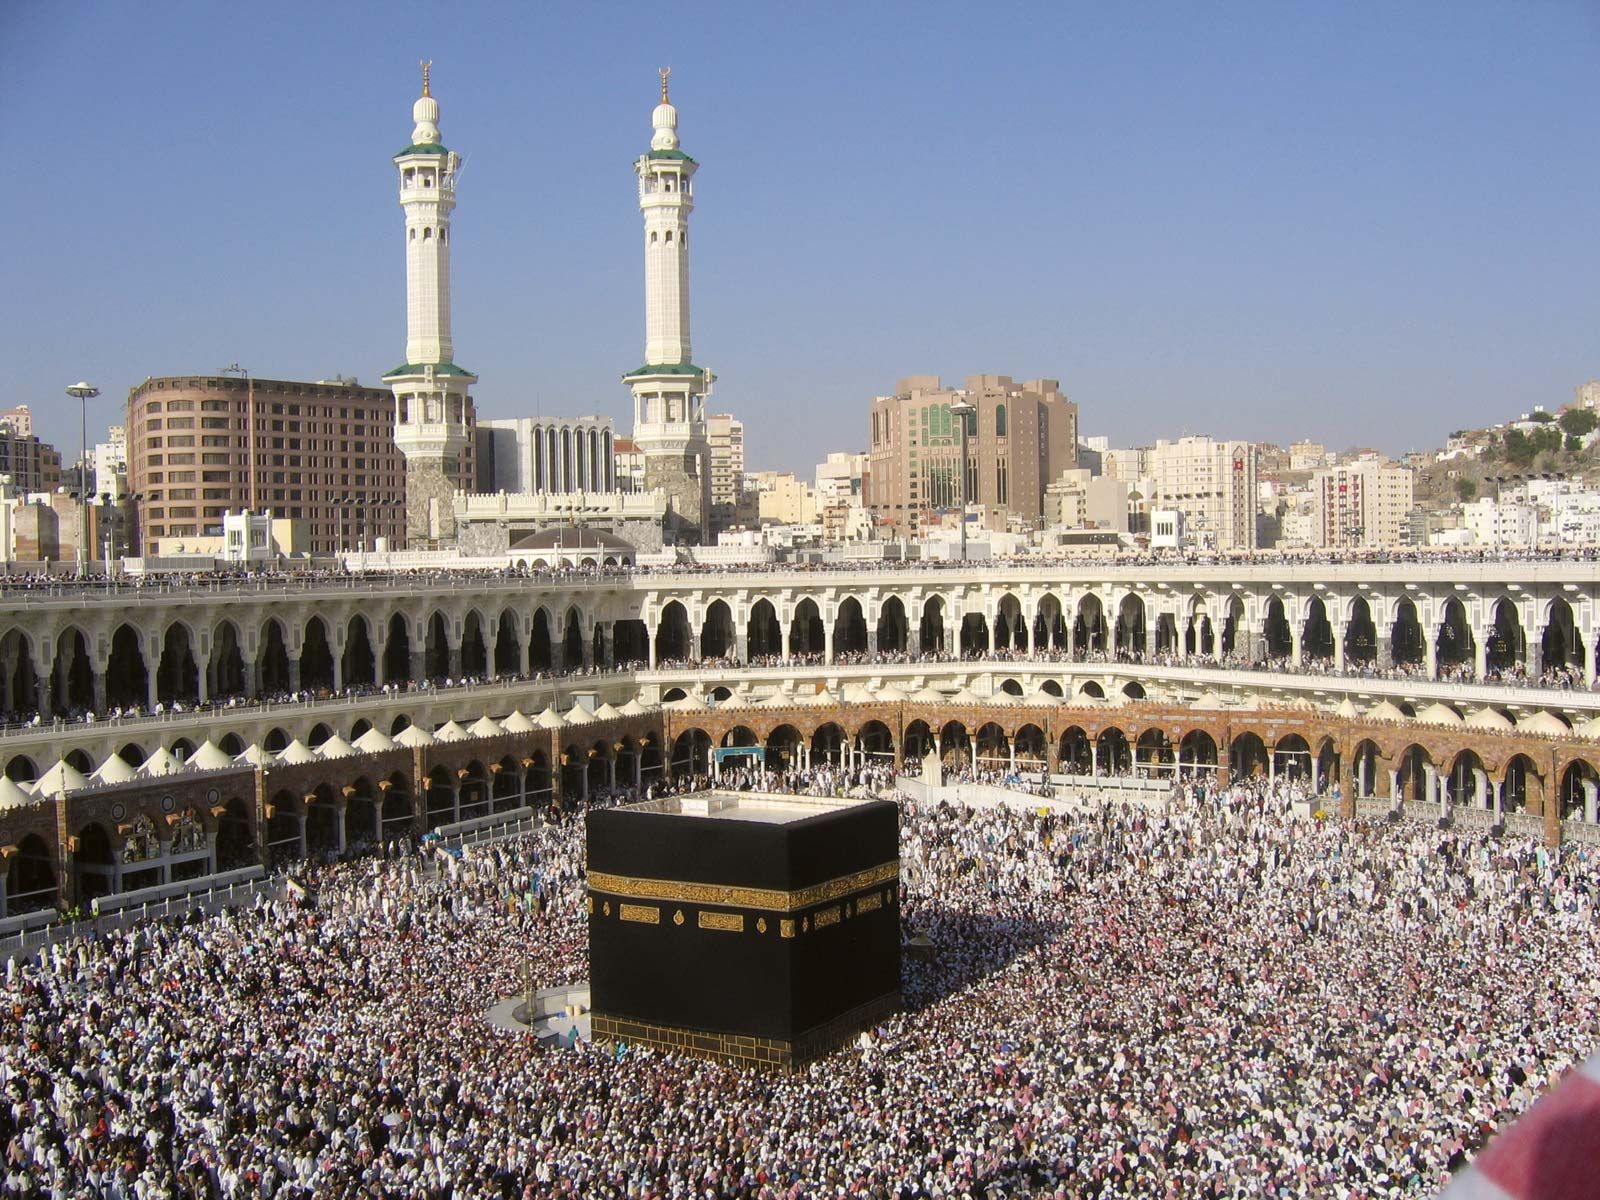 Kabah-hajj-pilgrims-Saudi-Arabia-Mecca.jpg